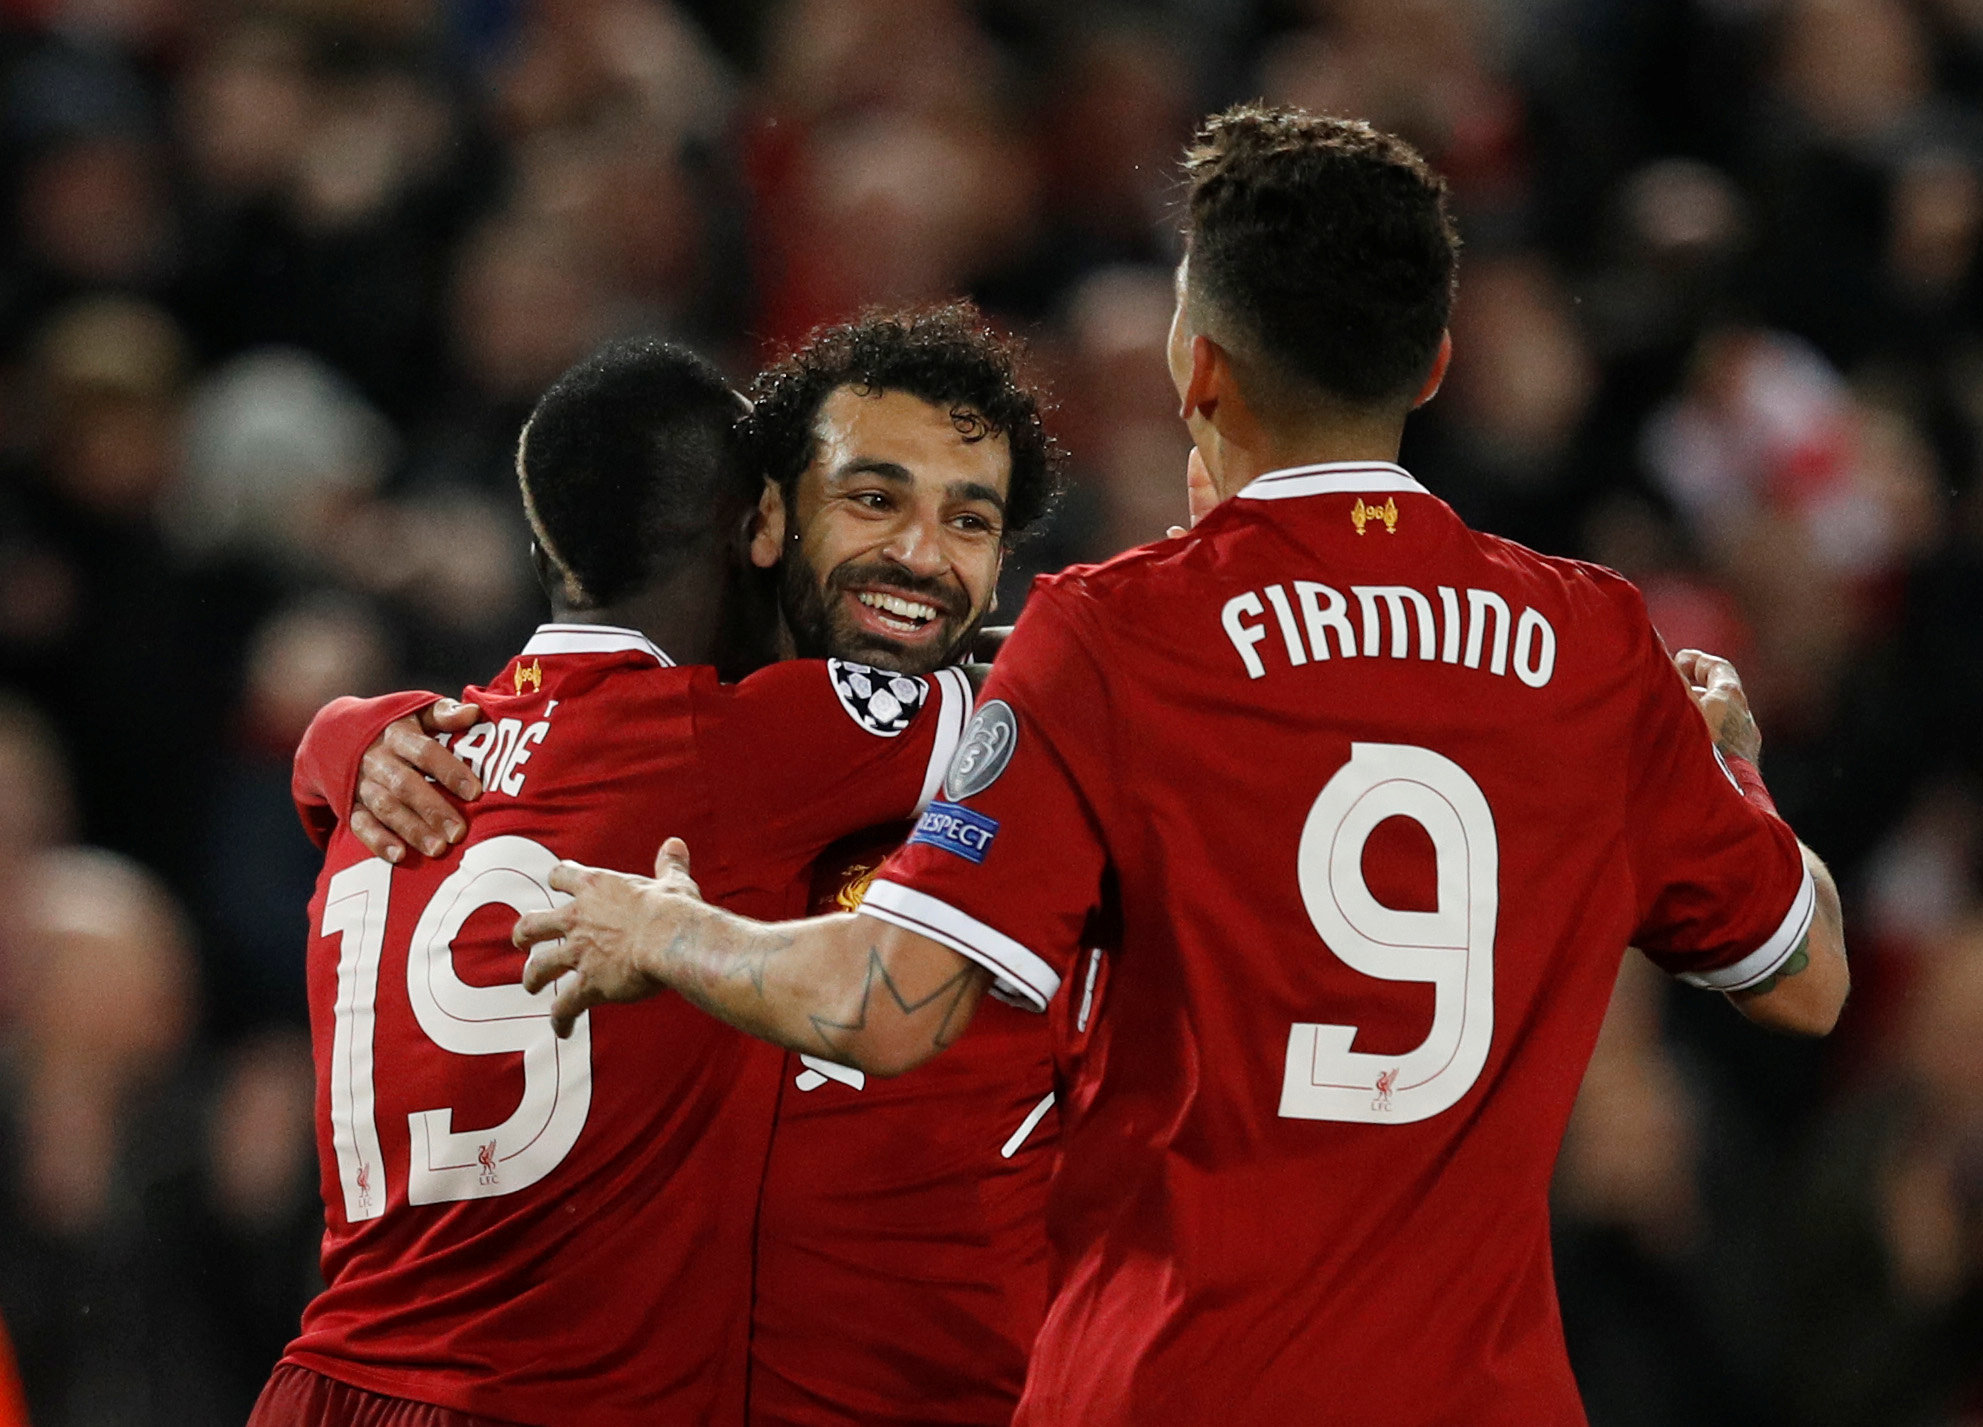 Niềm vui của các cầu thủ Liverpool sau khi Mane nâng tỉ số lên 3-0. Ảnh: REUTERS